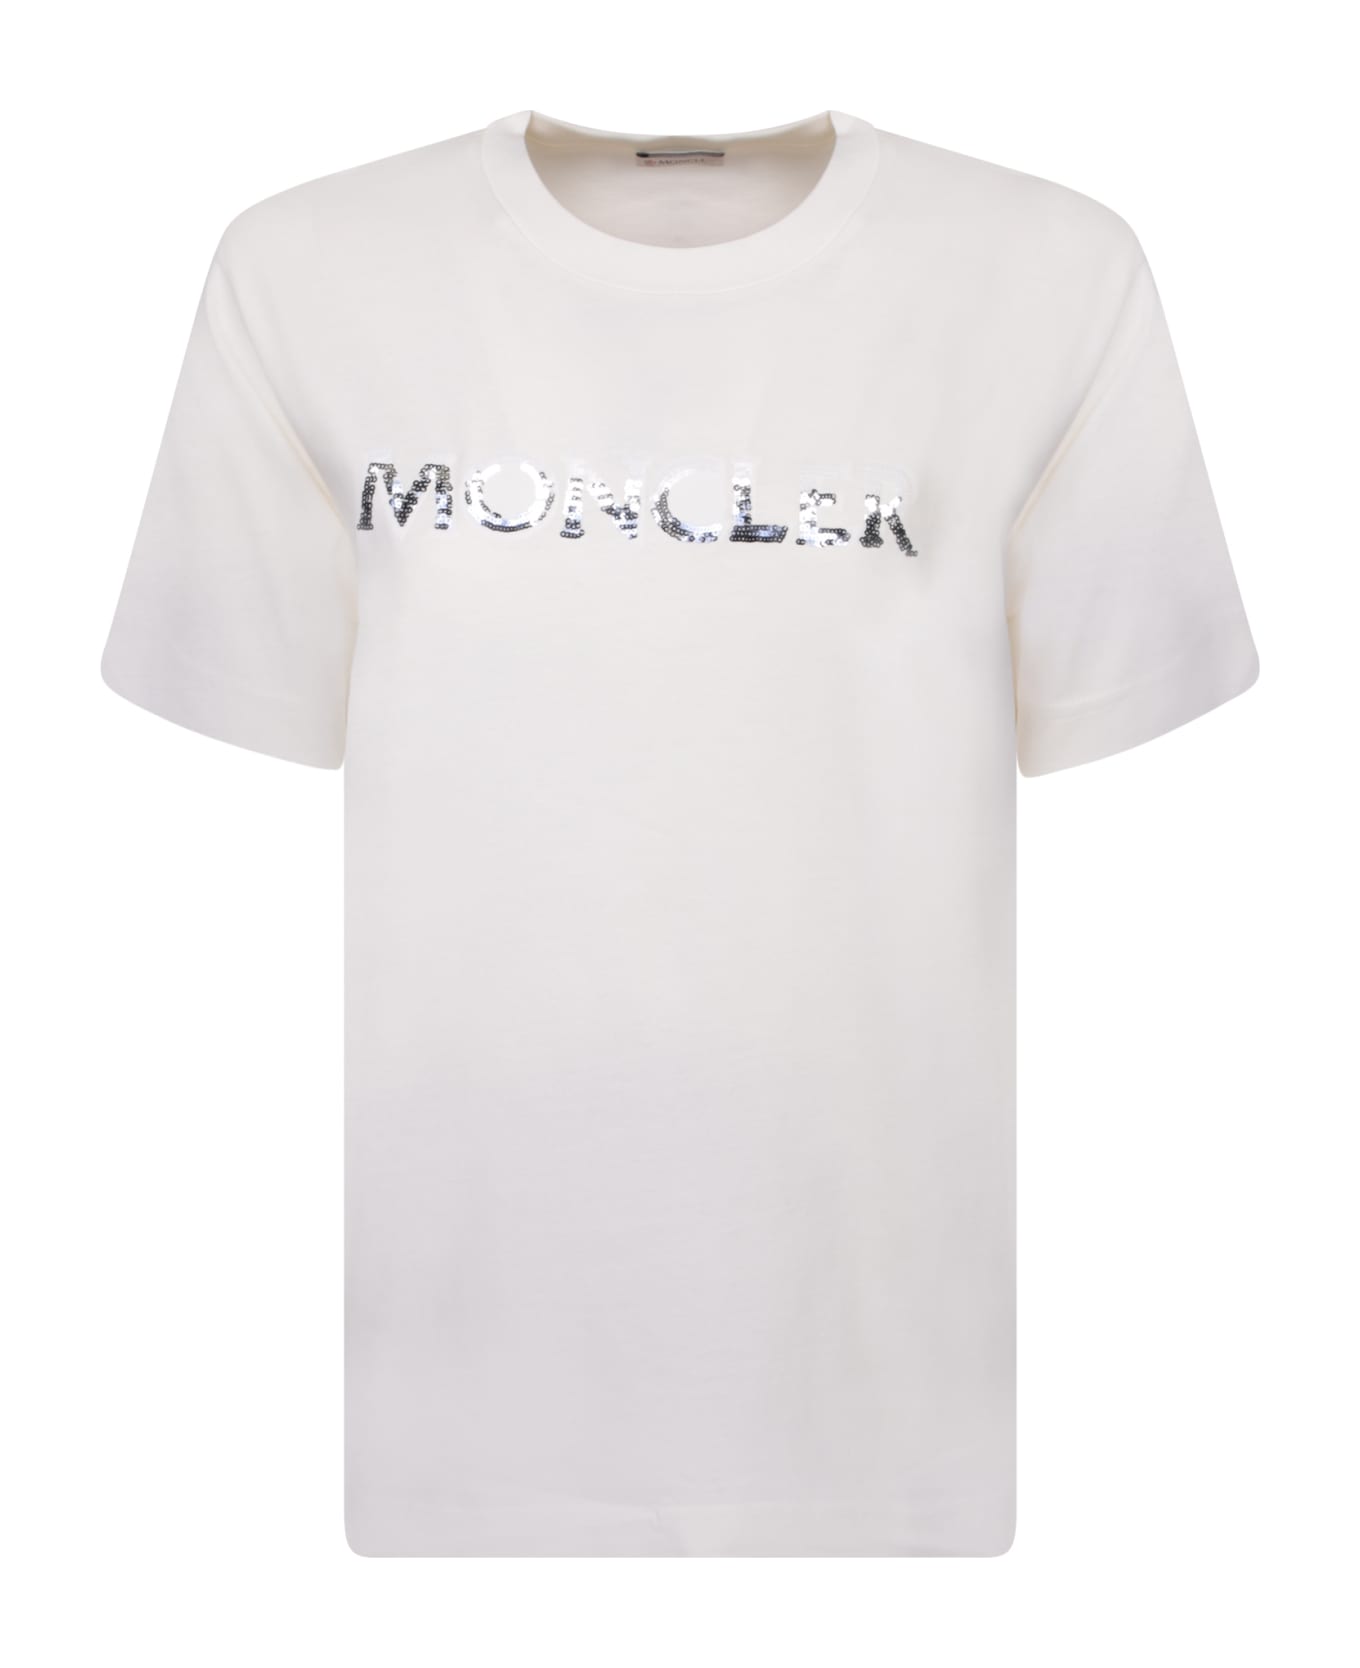 Moncler Logo Short Sleeves White T-shirt - Avorio